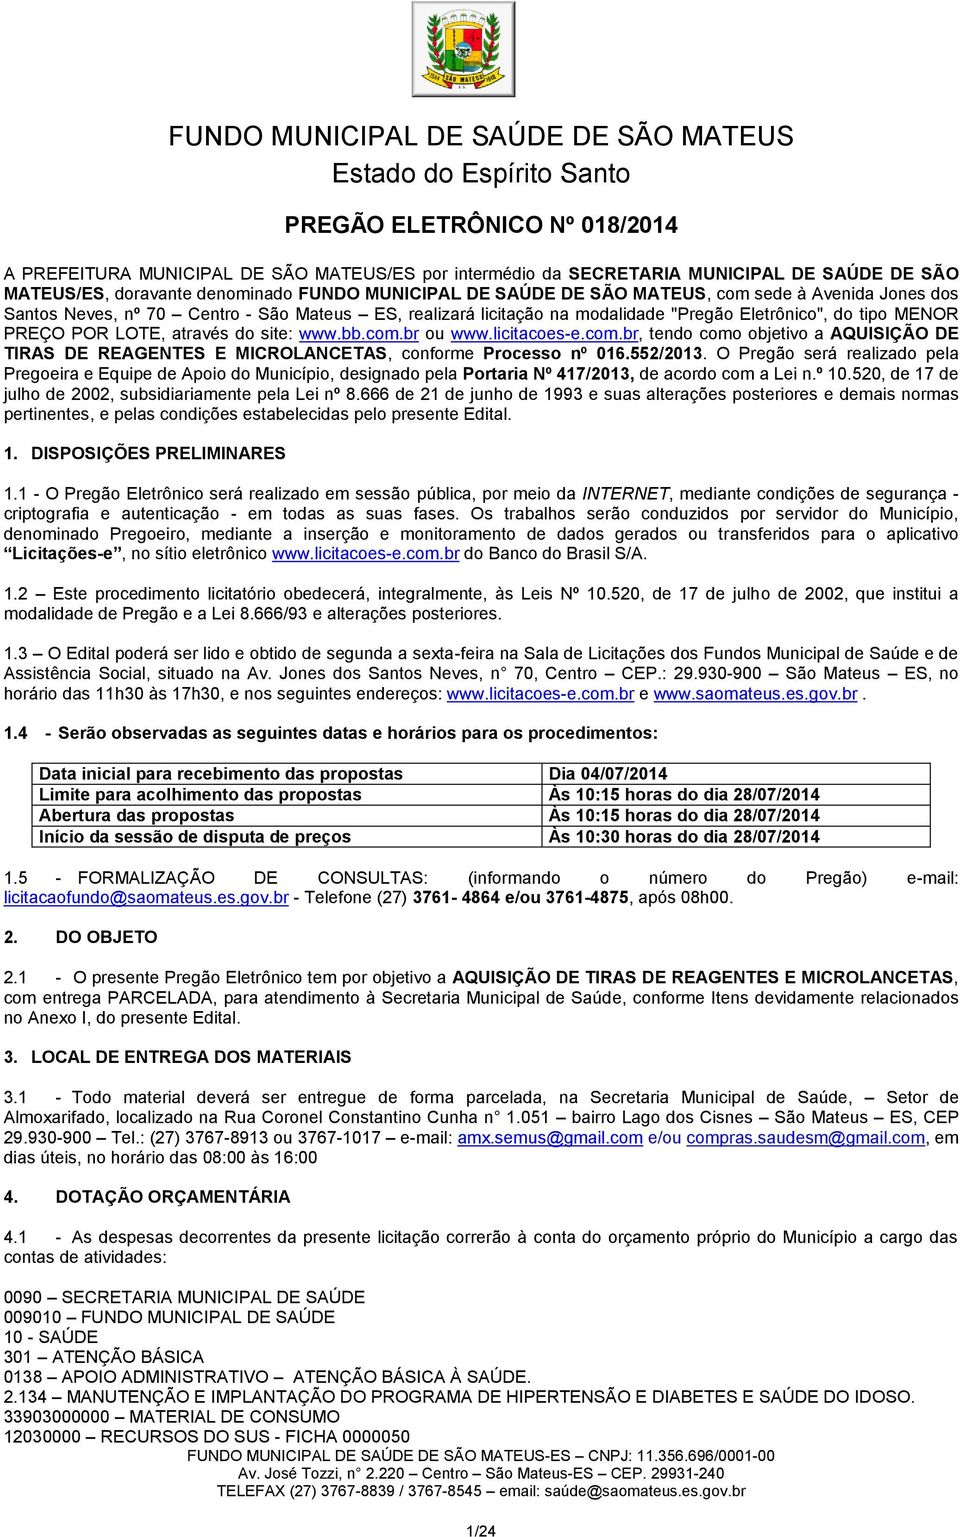 licitacoes-e.com.br, tendo como objetivo a AQUISIÇÃO DE TIRAS DE REAGENTES E MICROLANCETAS, conforme Processo nº 016.552/2013.